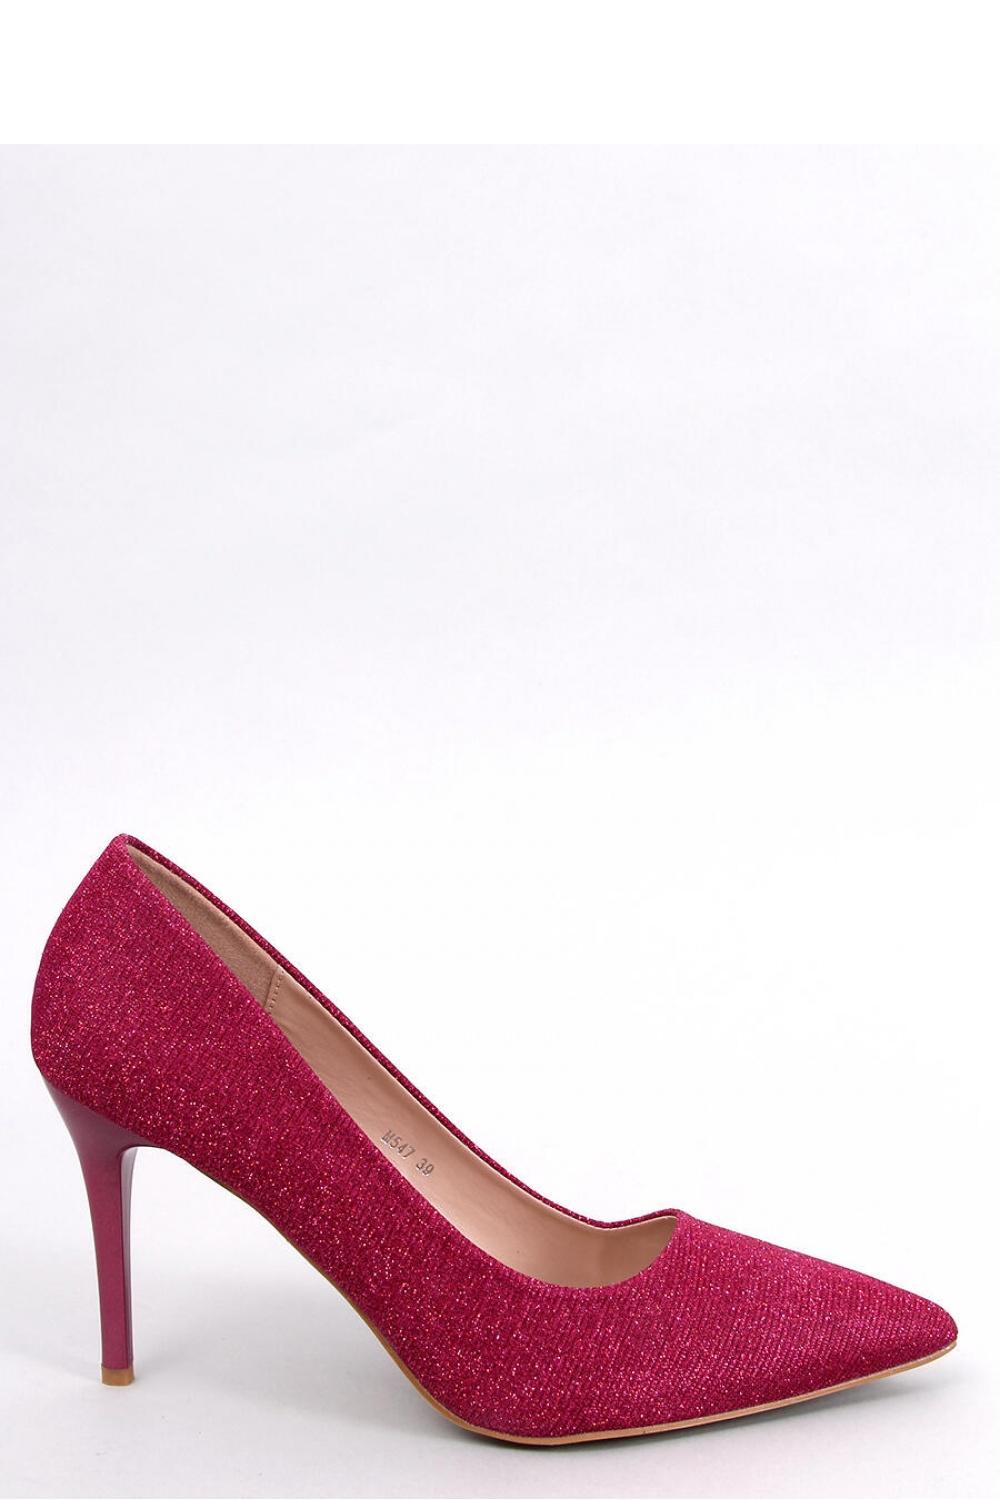 High heels model 180713 Inello